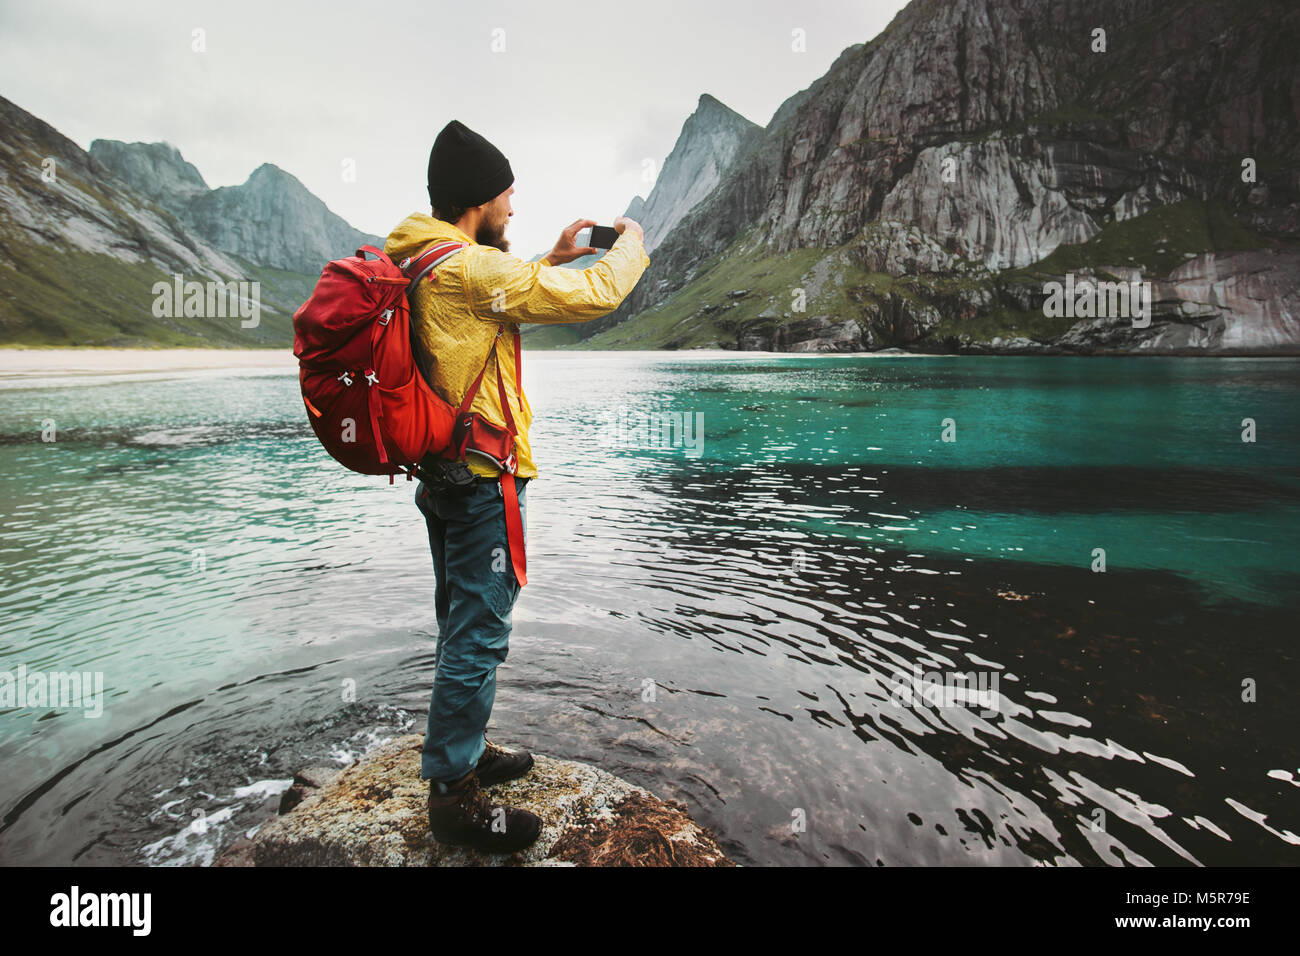 Uomo con zaino prendendo foto tramite smartphone camminando sulla spiaggia di Norvegia Travel lifestyle wanderlust concetto outdoor avventura vacanze estive Foto Stock